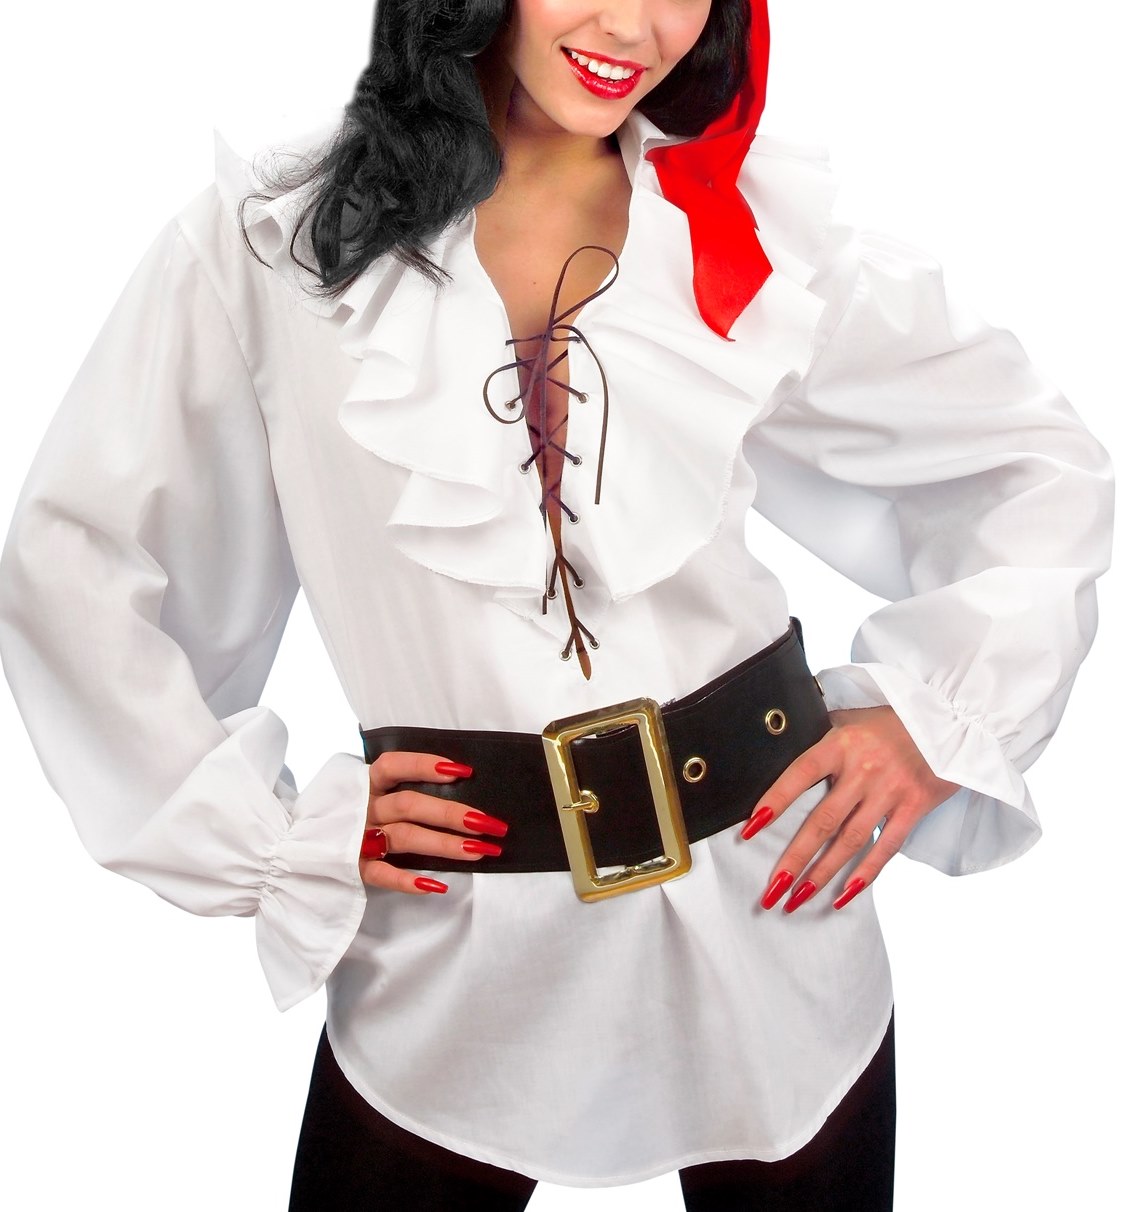 Comprar Camisa Pirata/Renacentista Blanca Mujer > Accesorios Textiles para Disfraces > Complementos para Disfraces > Camisas camisetas para Disfraces | de disfraces en Madrid, disfracestuyyo.com